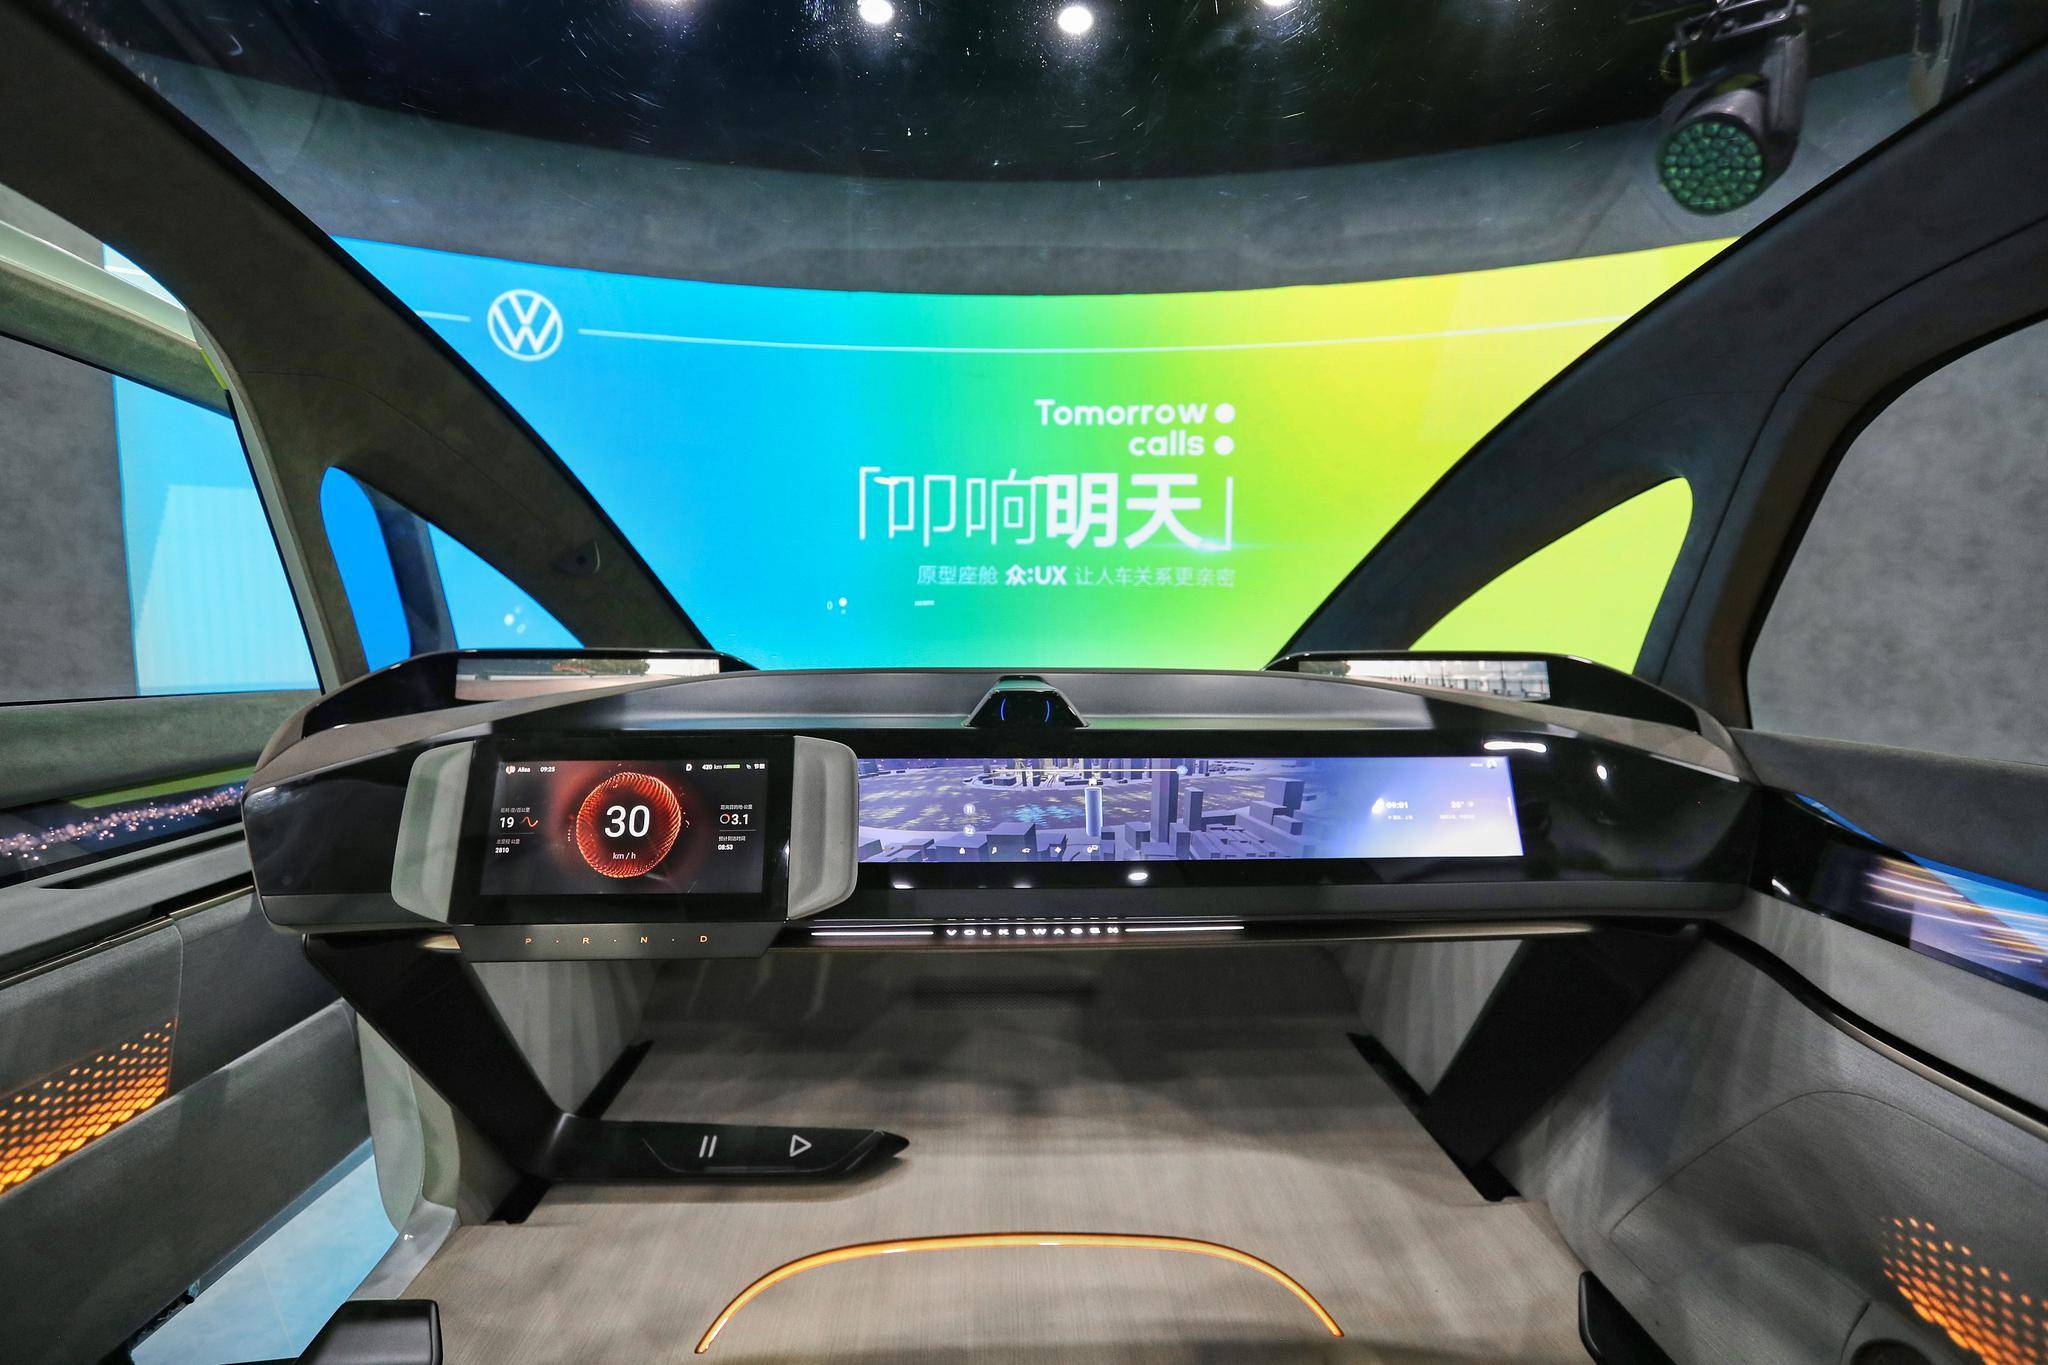 Dong Che Daily Tesla veröffentlicht das vollautomatisierte Fahrsystem Beta 9.0 / Audis Projekt für autonomes Fahren wird 2025 in Serie gehen / Xiaomi beschleunigt den Prozess der Autoherstellung - ce64 kquziih9532231